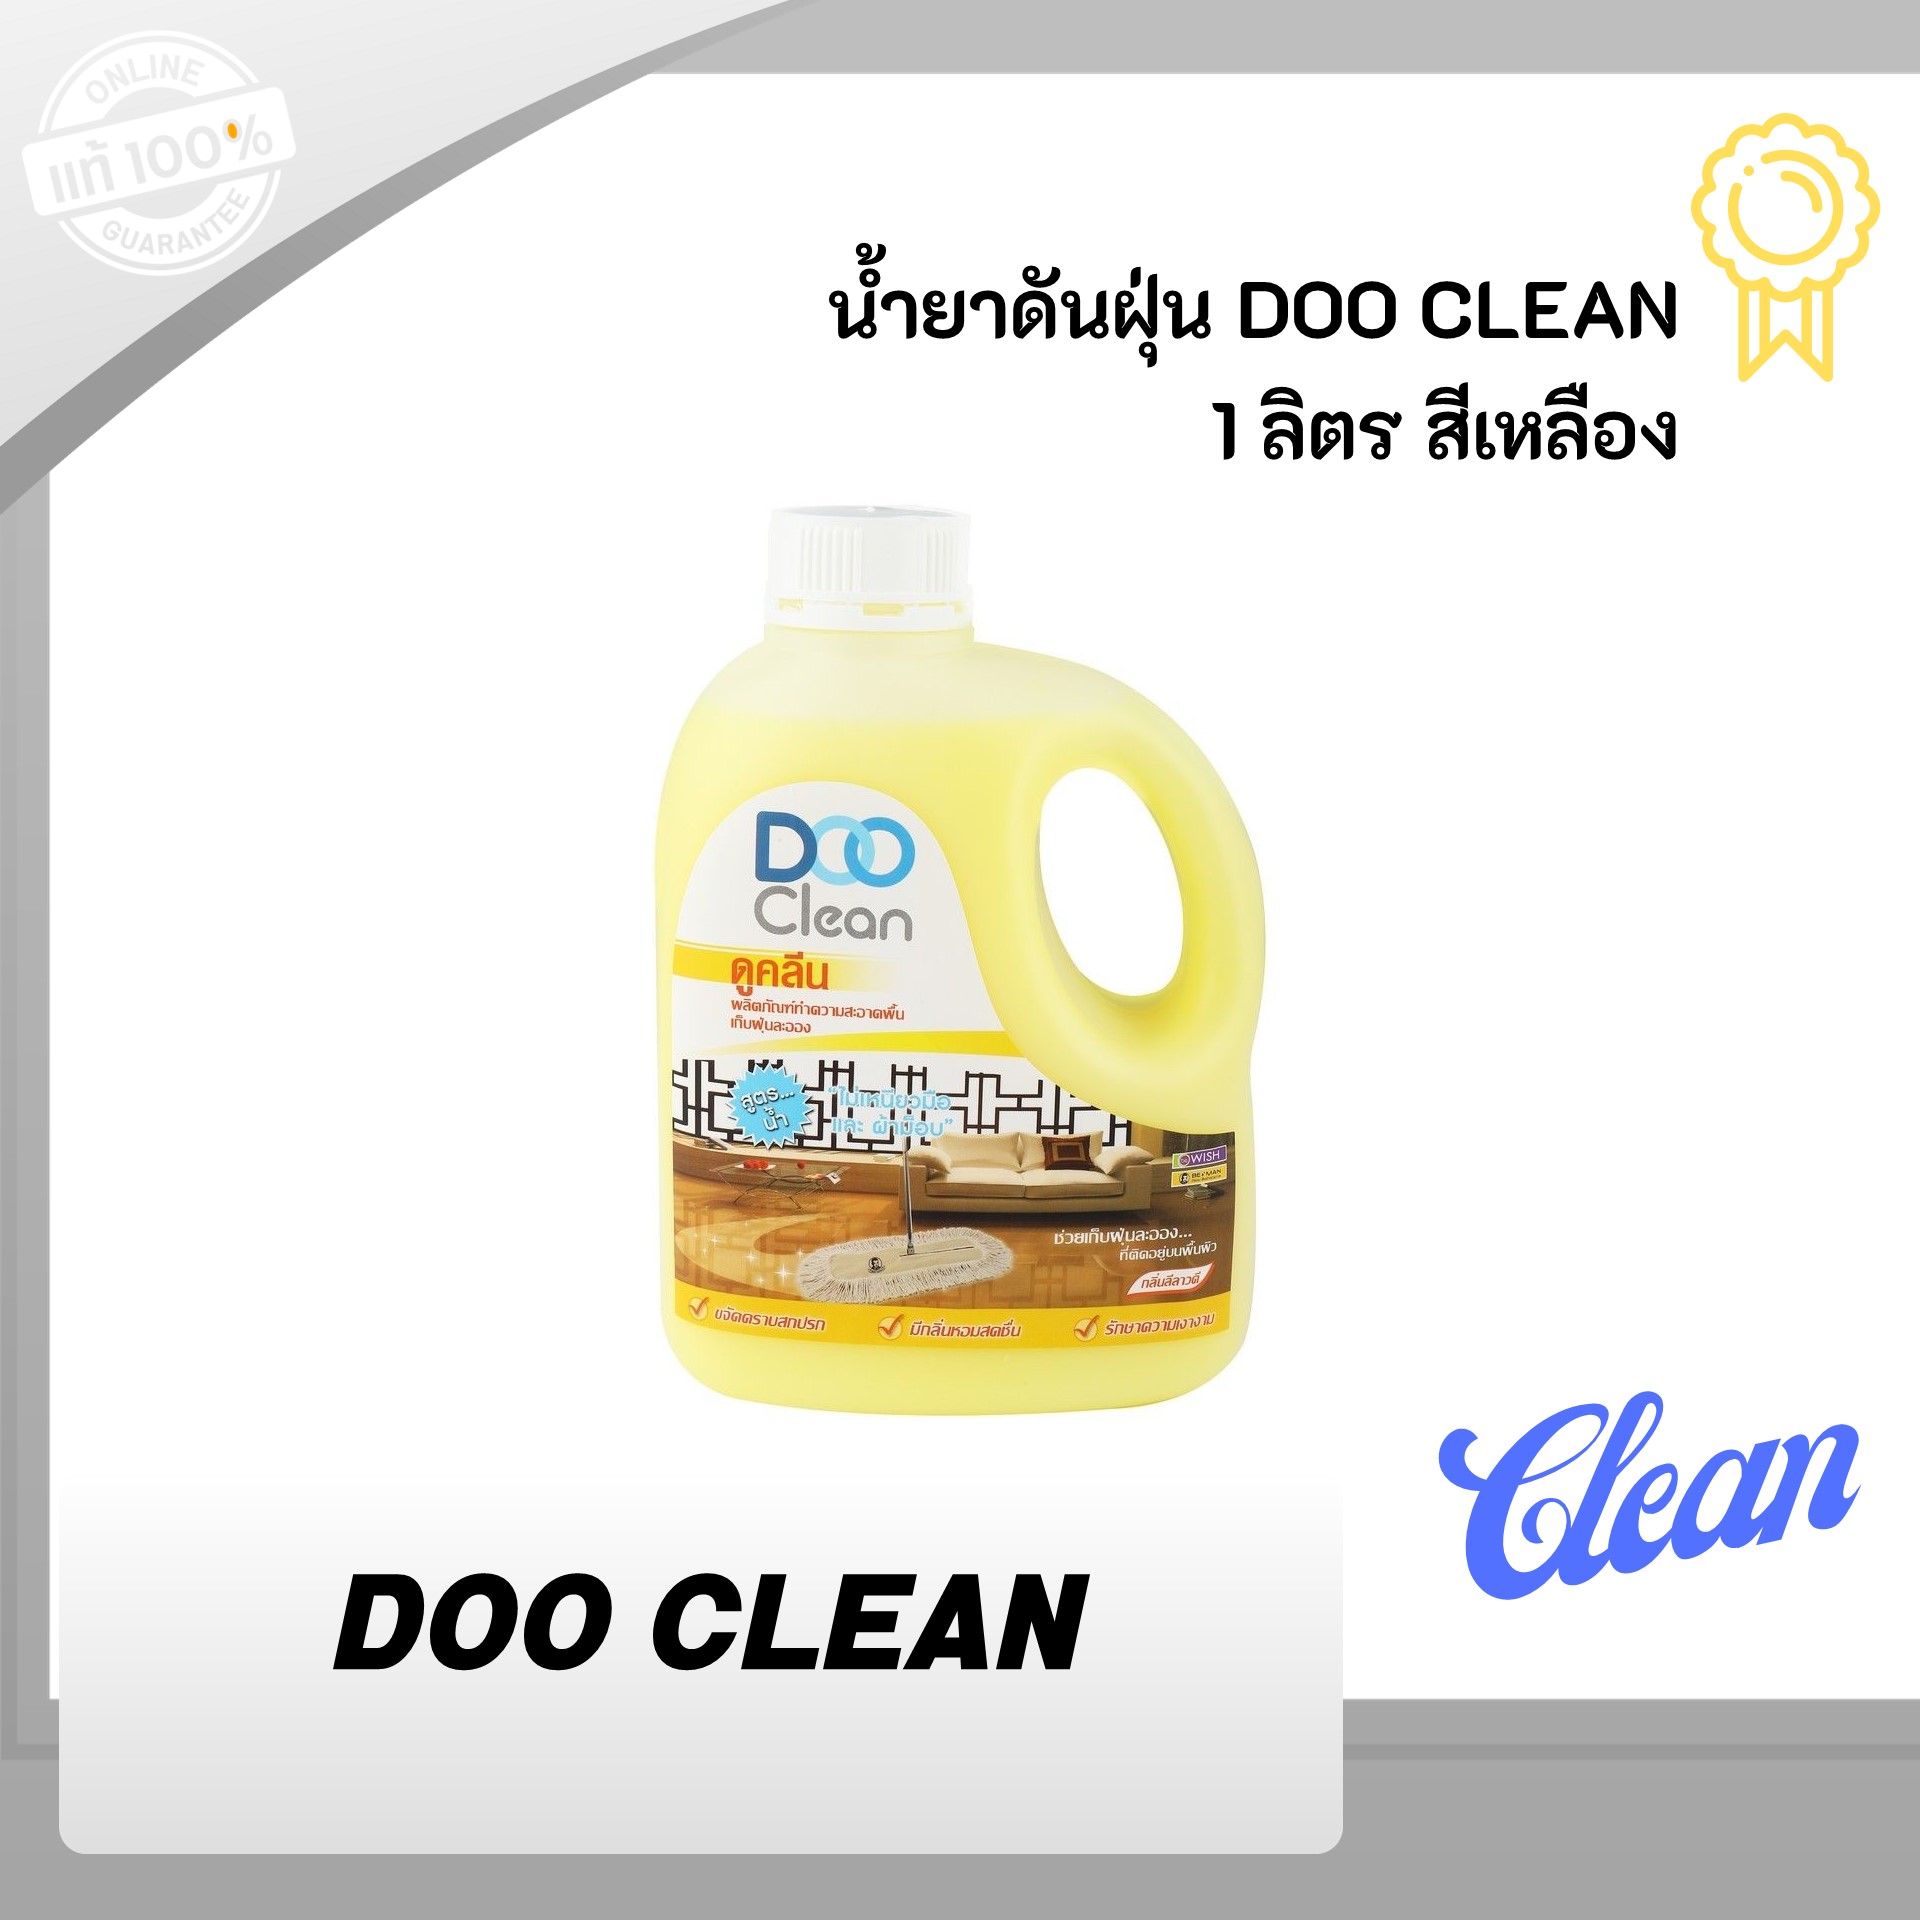 น้ำยาดันฝุ่น DOO CLEAN 1 ลิตร สีเหลือง เก็บฝุ่นละออง ฝุ่นฟุ้งกระจาย กลิ่นลีลาวดี หอมสดชื่น พื้นผิวทั่วไป ทำความสะอาดอย่างหมดจด